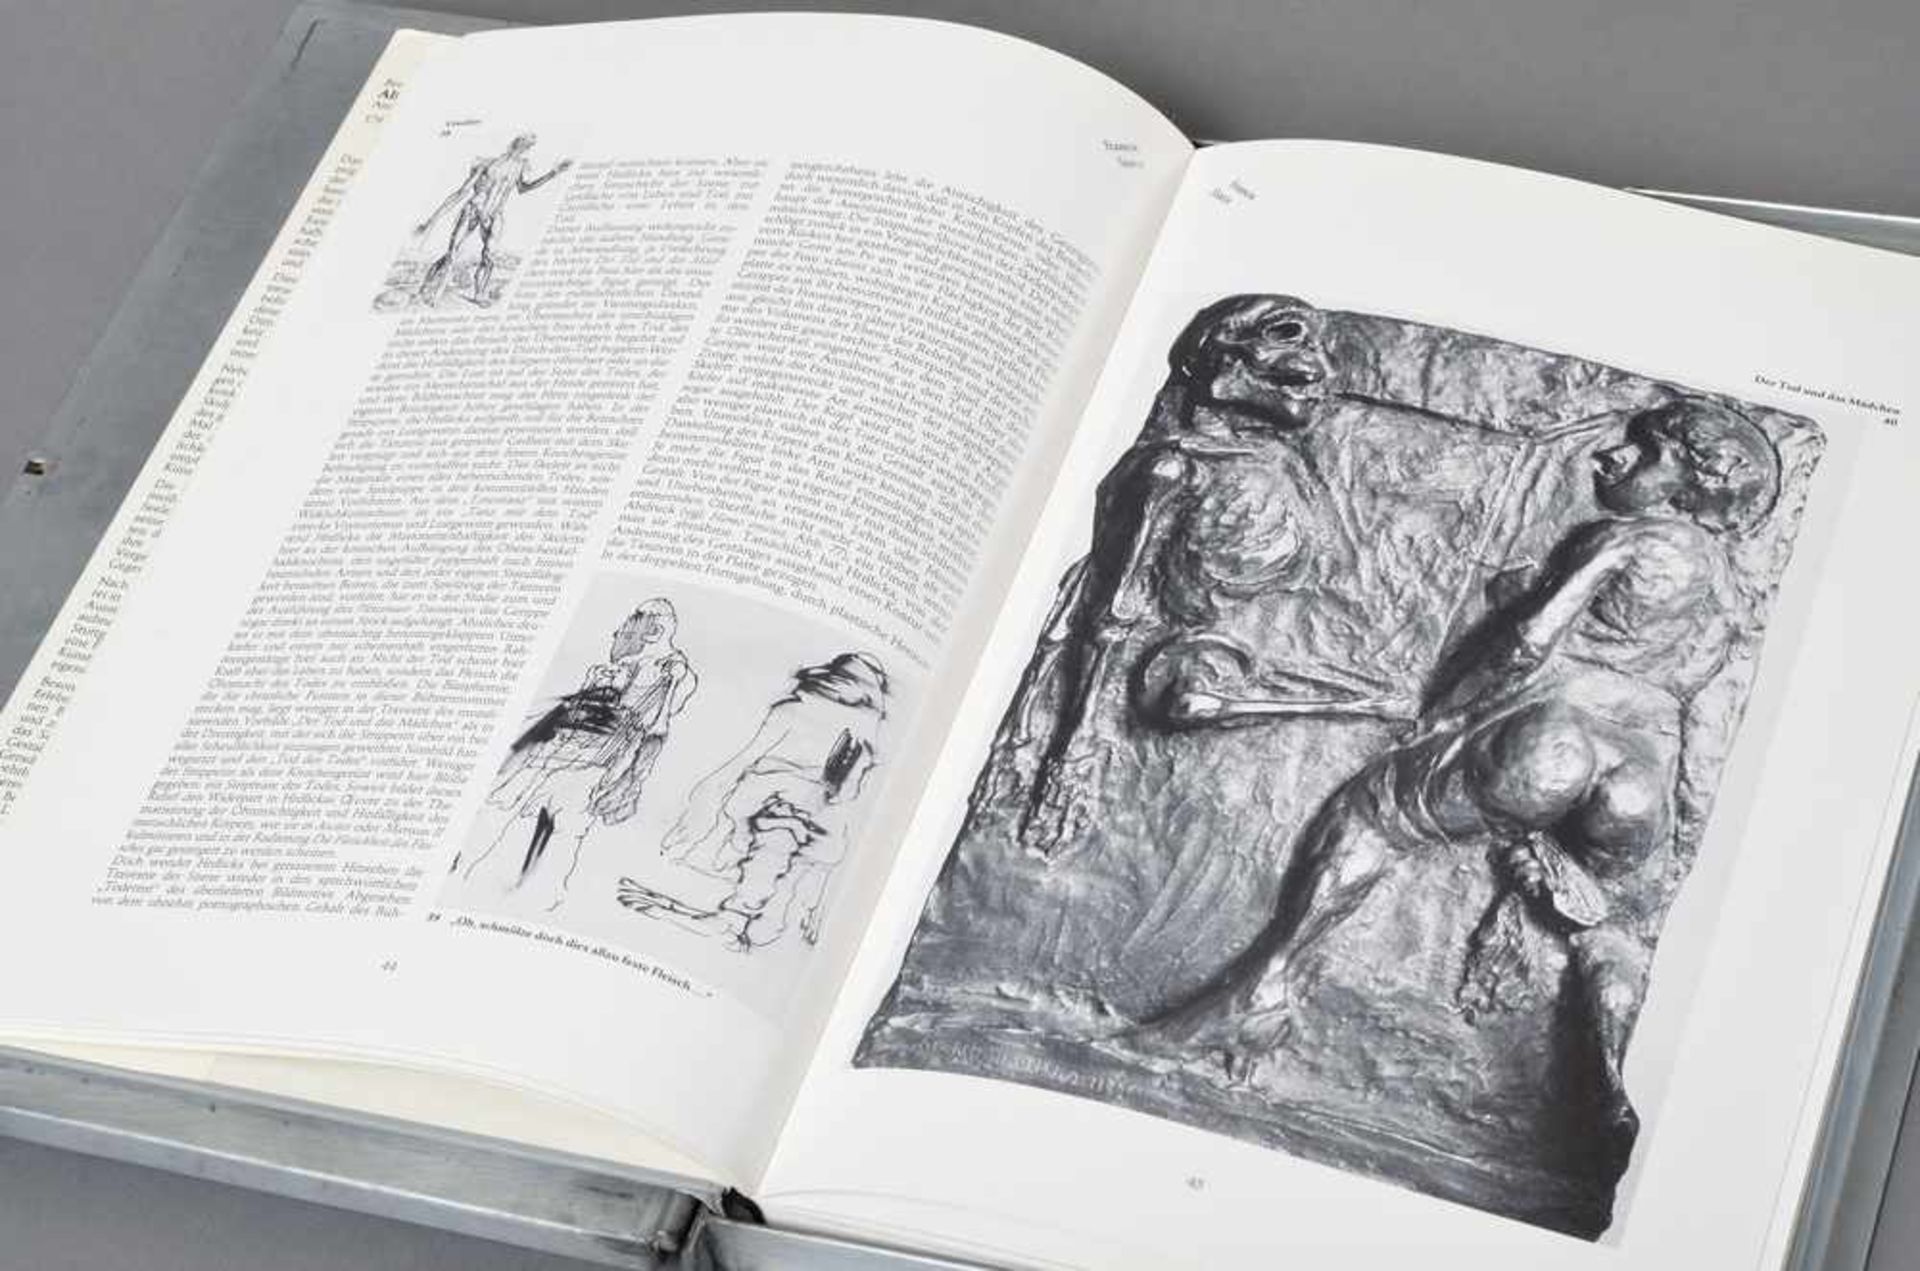 Hrdlicka, Alfred (1928-2009) "Anatomie des Leids", Buch in Schatulle mit Bronze Relief, 7/20, 36, - Bild 4 aus 5